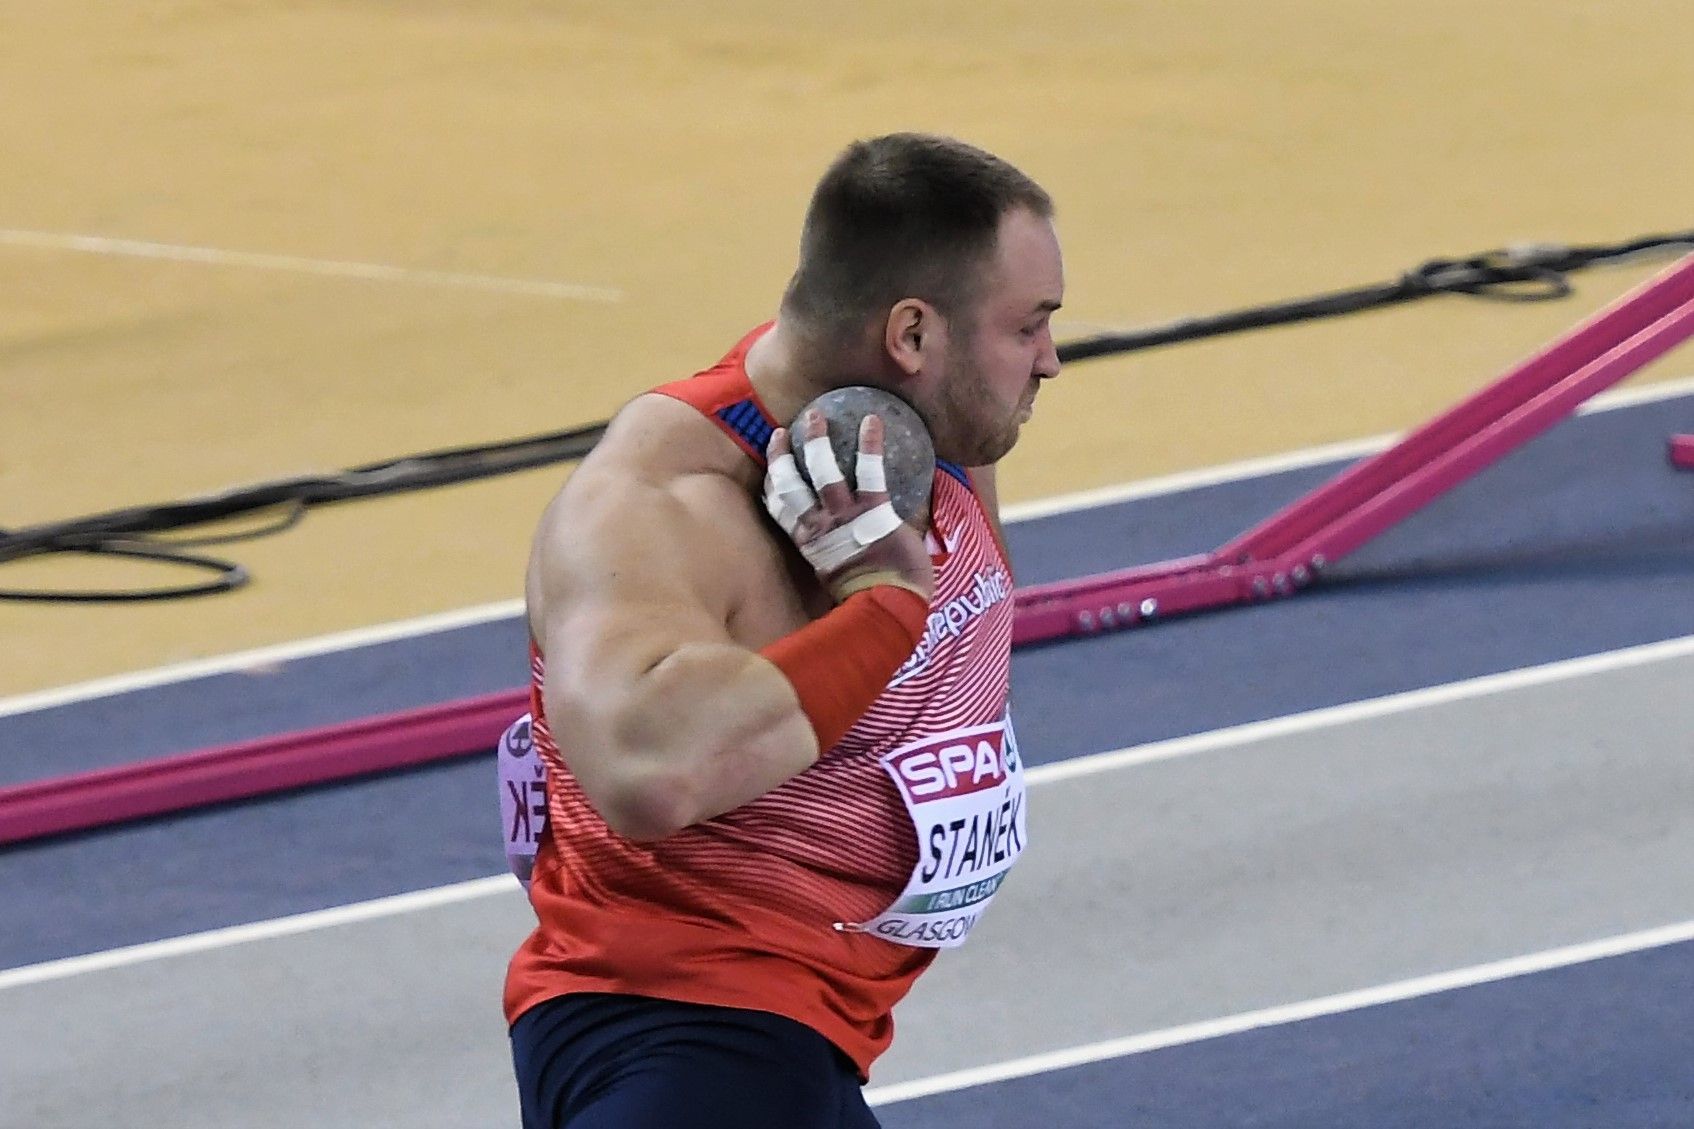 Koulař Tomáš Staněk na halovém mistrovství Evropy v Glasgow 2019